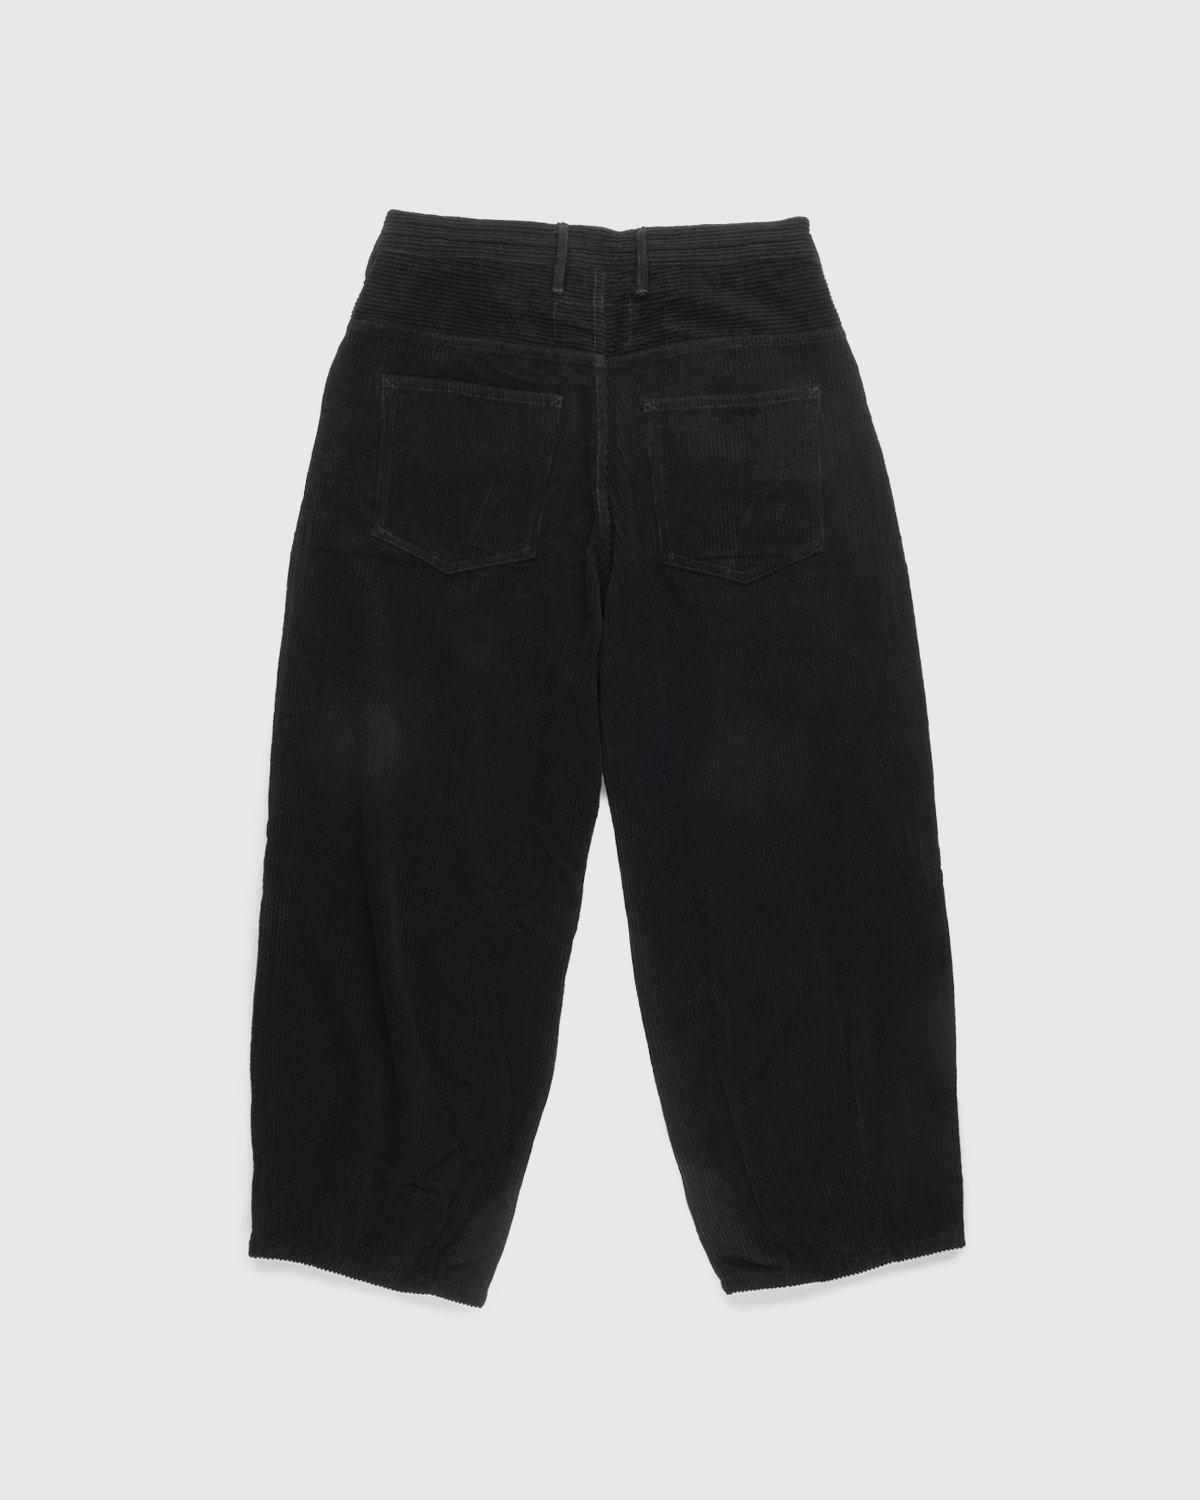 Story mfg. - Corduroy Lush Pants Iron - Clothing - Black - Image 2